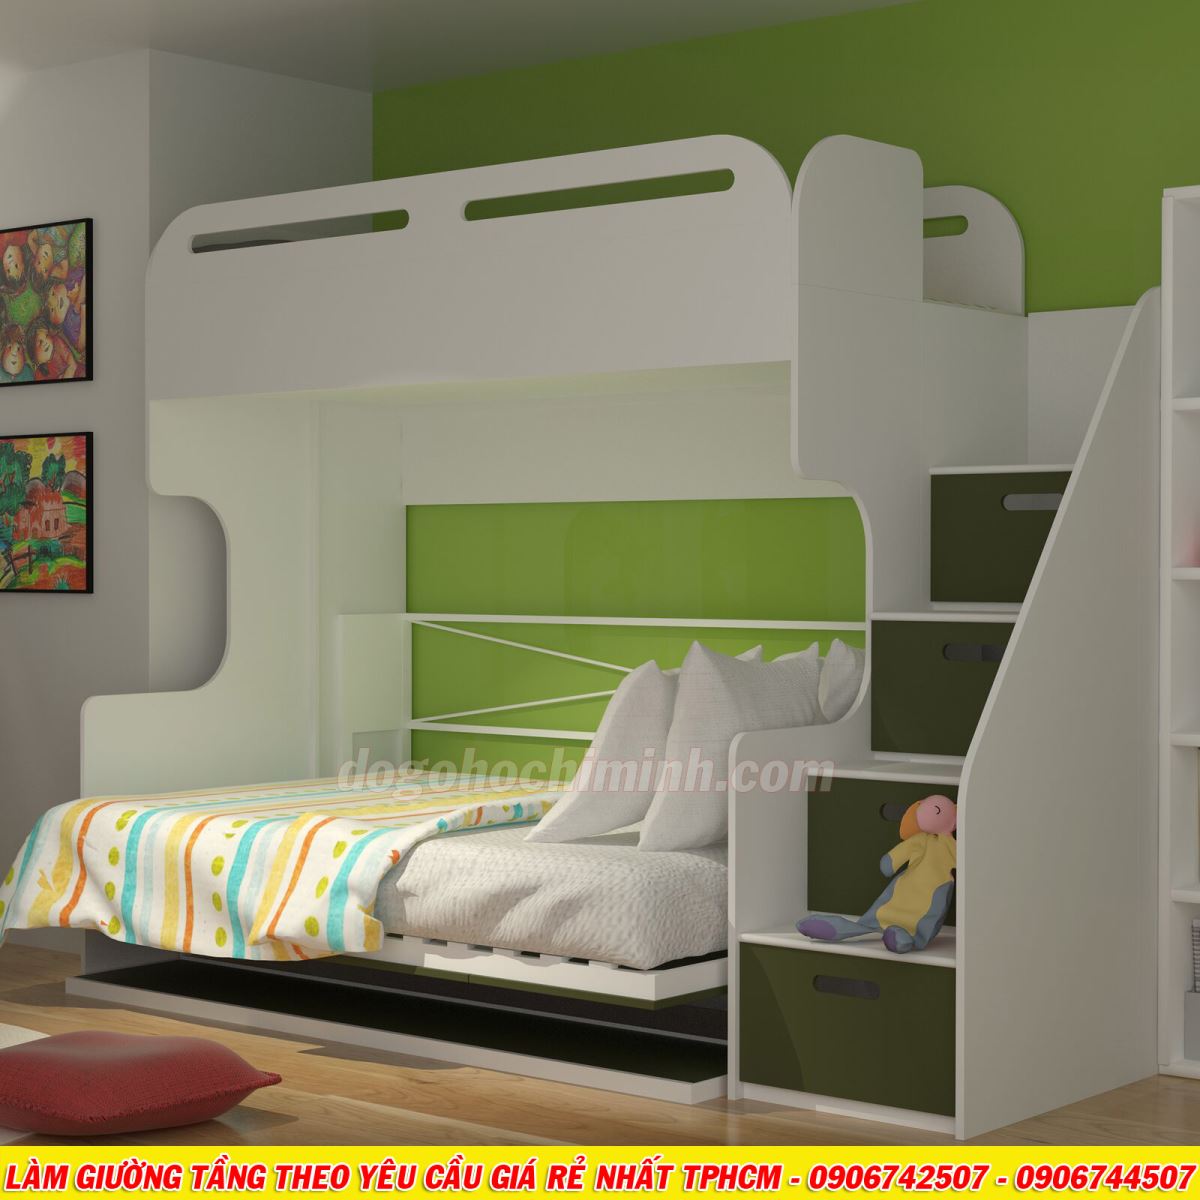 Mẫu giường tầng thiết kế phong cách châu âu mới nhất TPHCM 2020 - P2